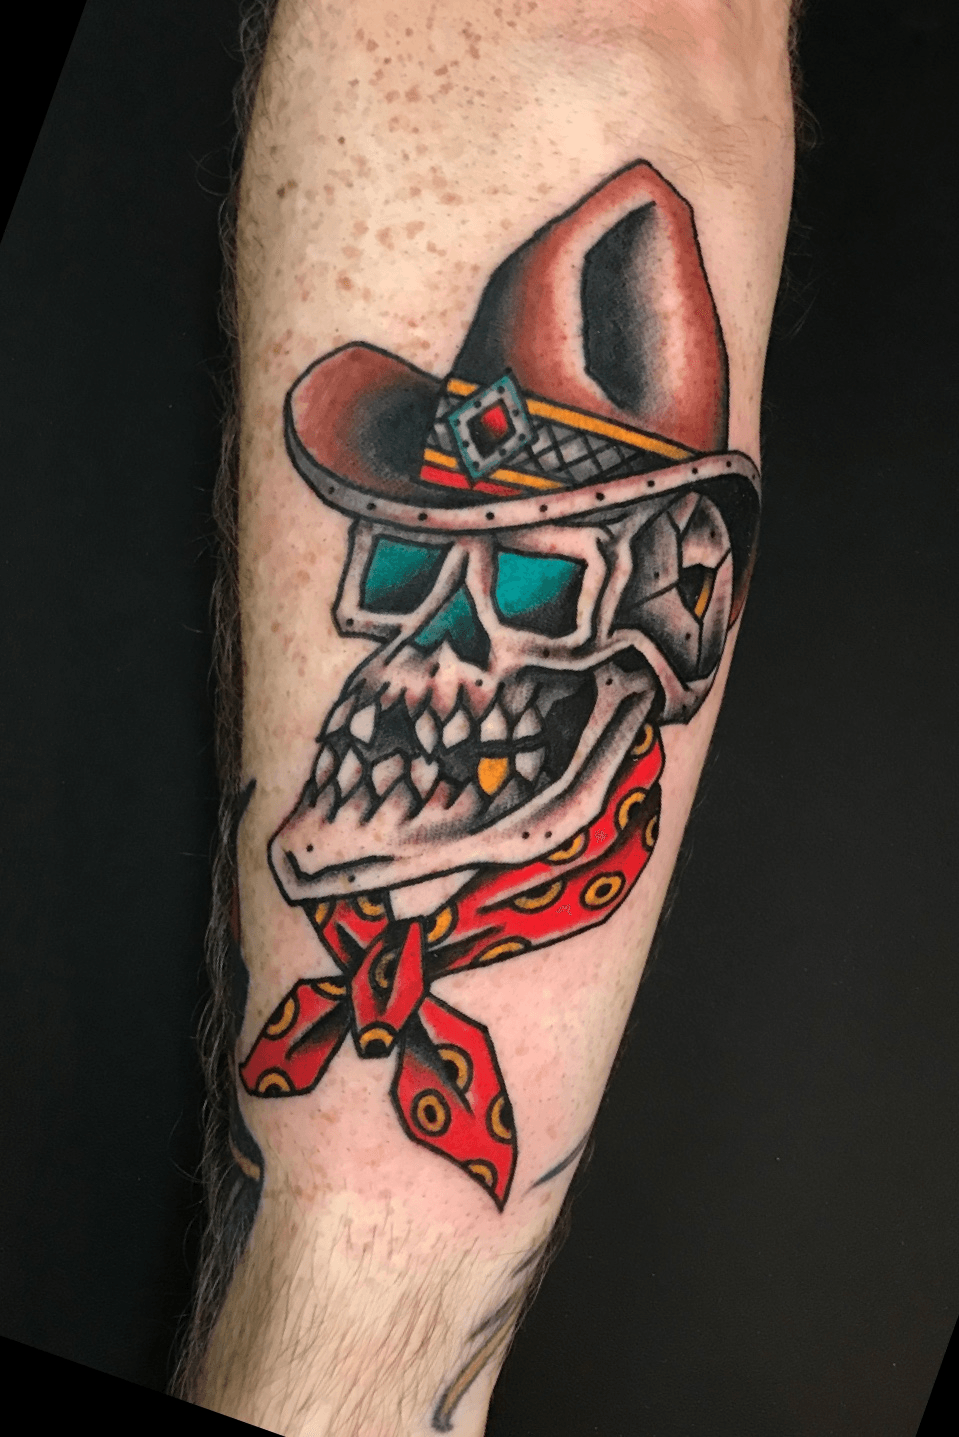 Dark art skull gangster tattoo vintage bandana Vector Image